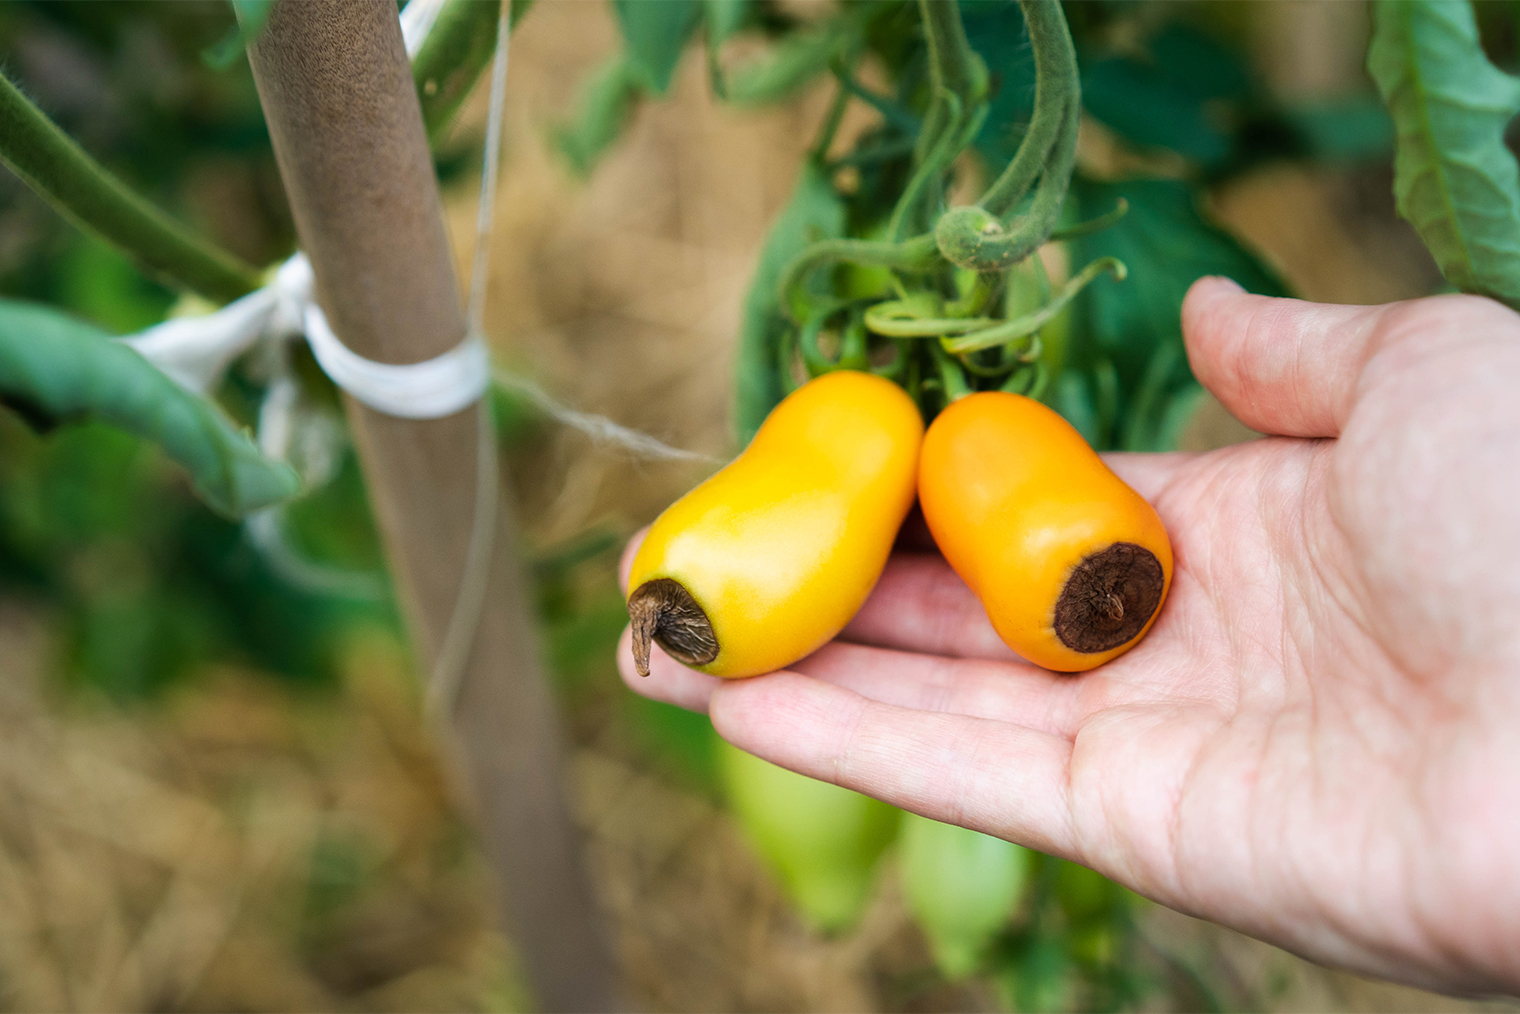 Сливовидные сорта томатов сильнее подвержены вершинной гнили. Фотография: Uryupina Nadezhda / Shutterstock / FOTODOM